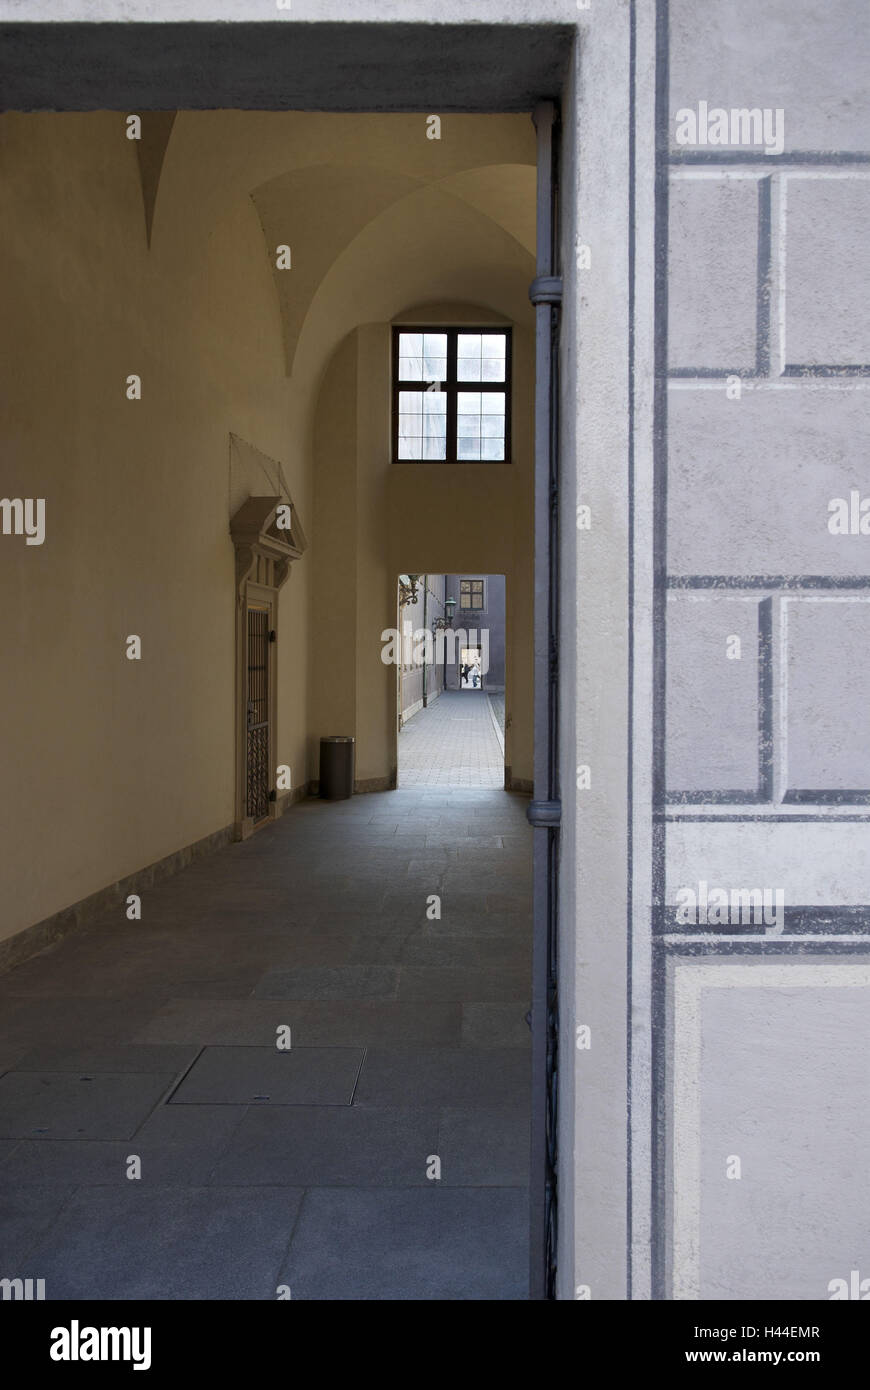 Résidence, passage, façade, porte, fenêtre, nervuré vault, Germany, Bavaria, Munich, Banque D'Images